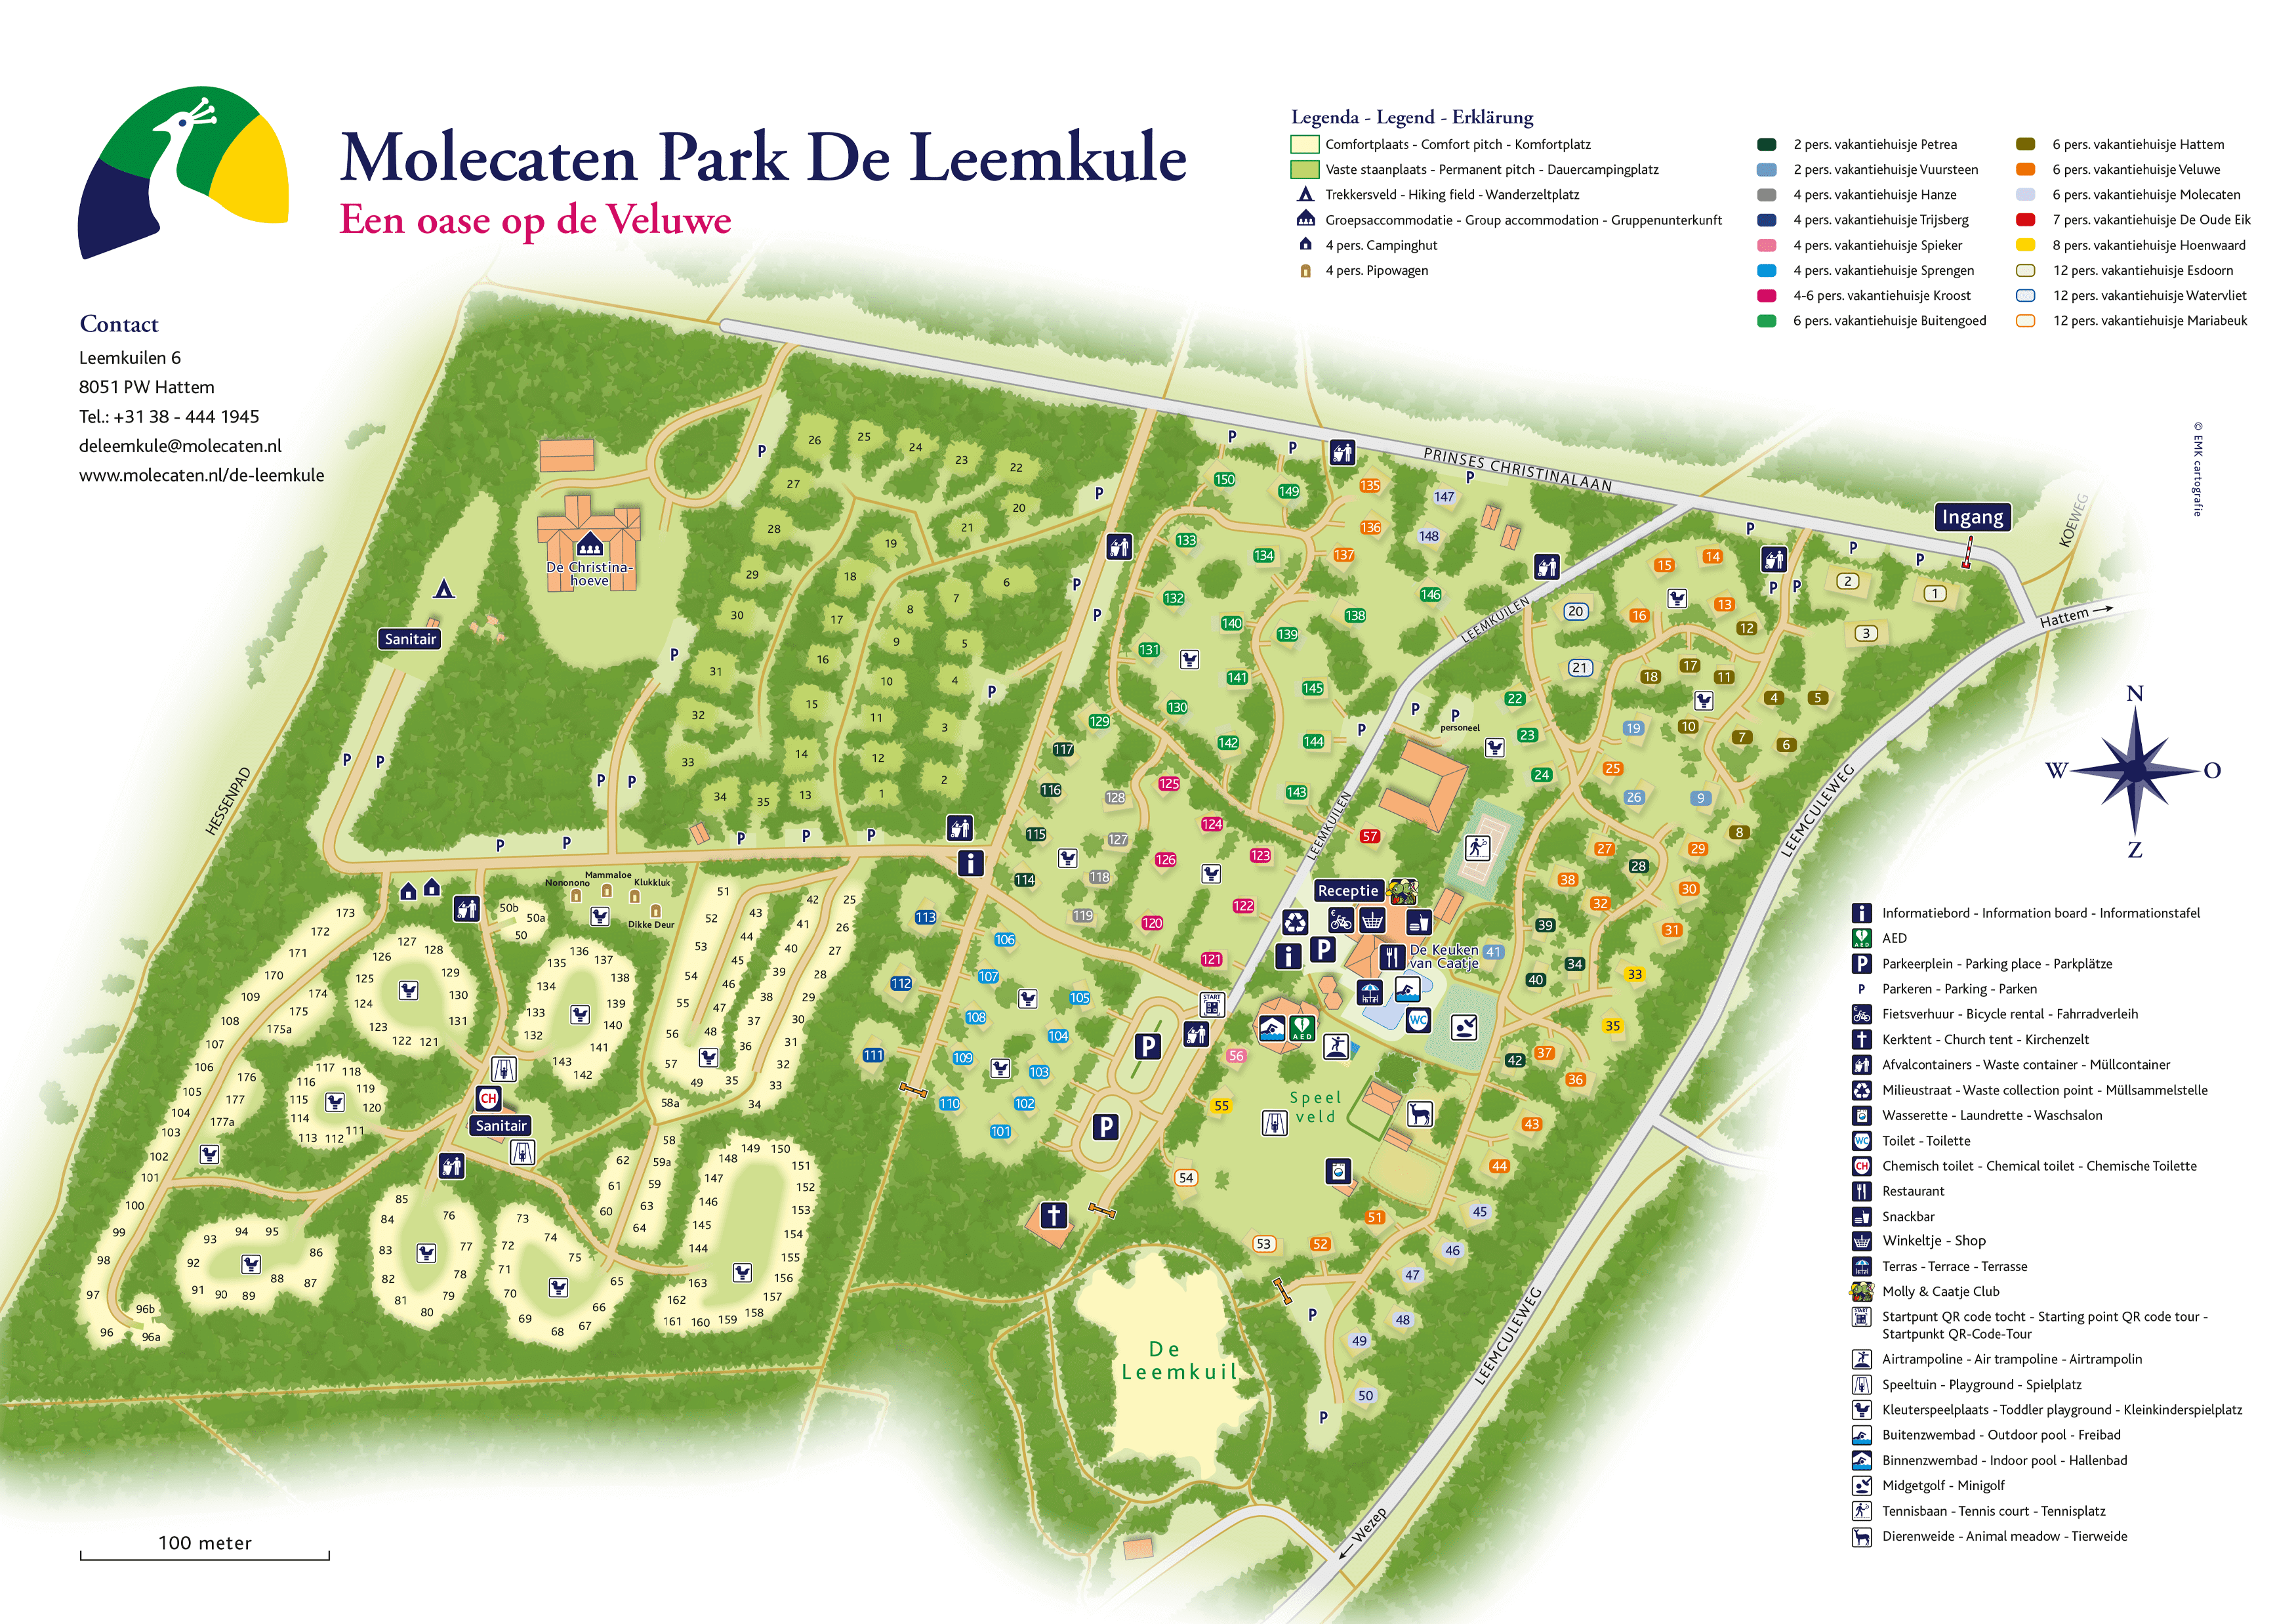 Molecaten Park De Leemkule accommodation.parkmap.alttext